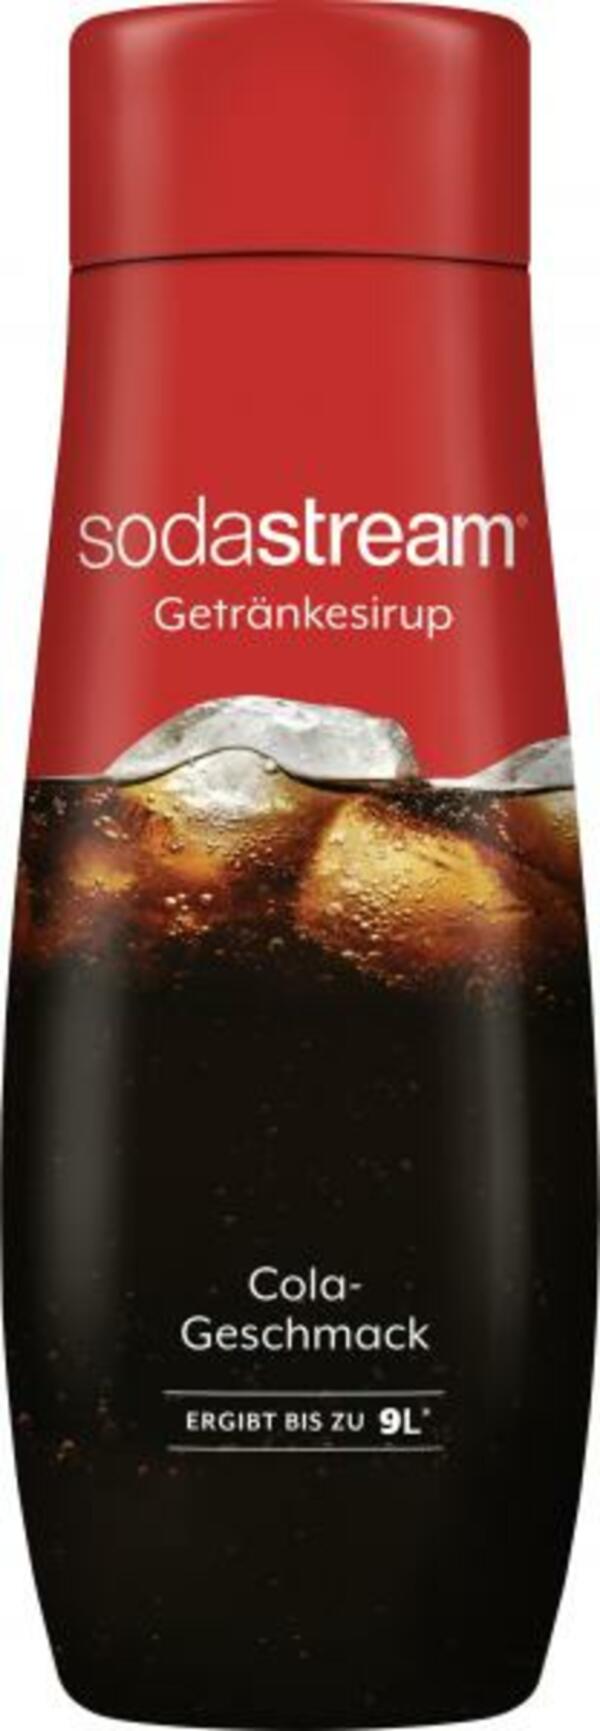 Bild 1 von Soda Stream Getränkesirup Cola